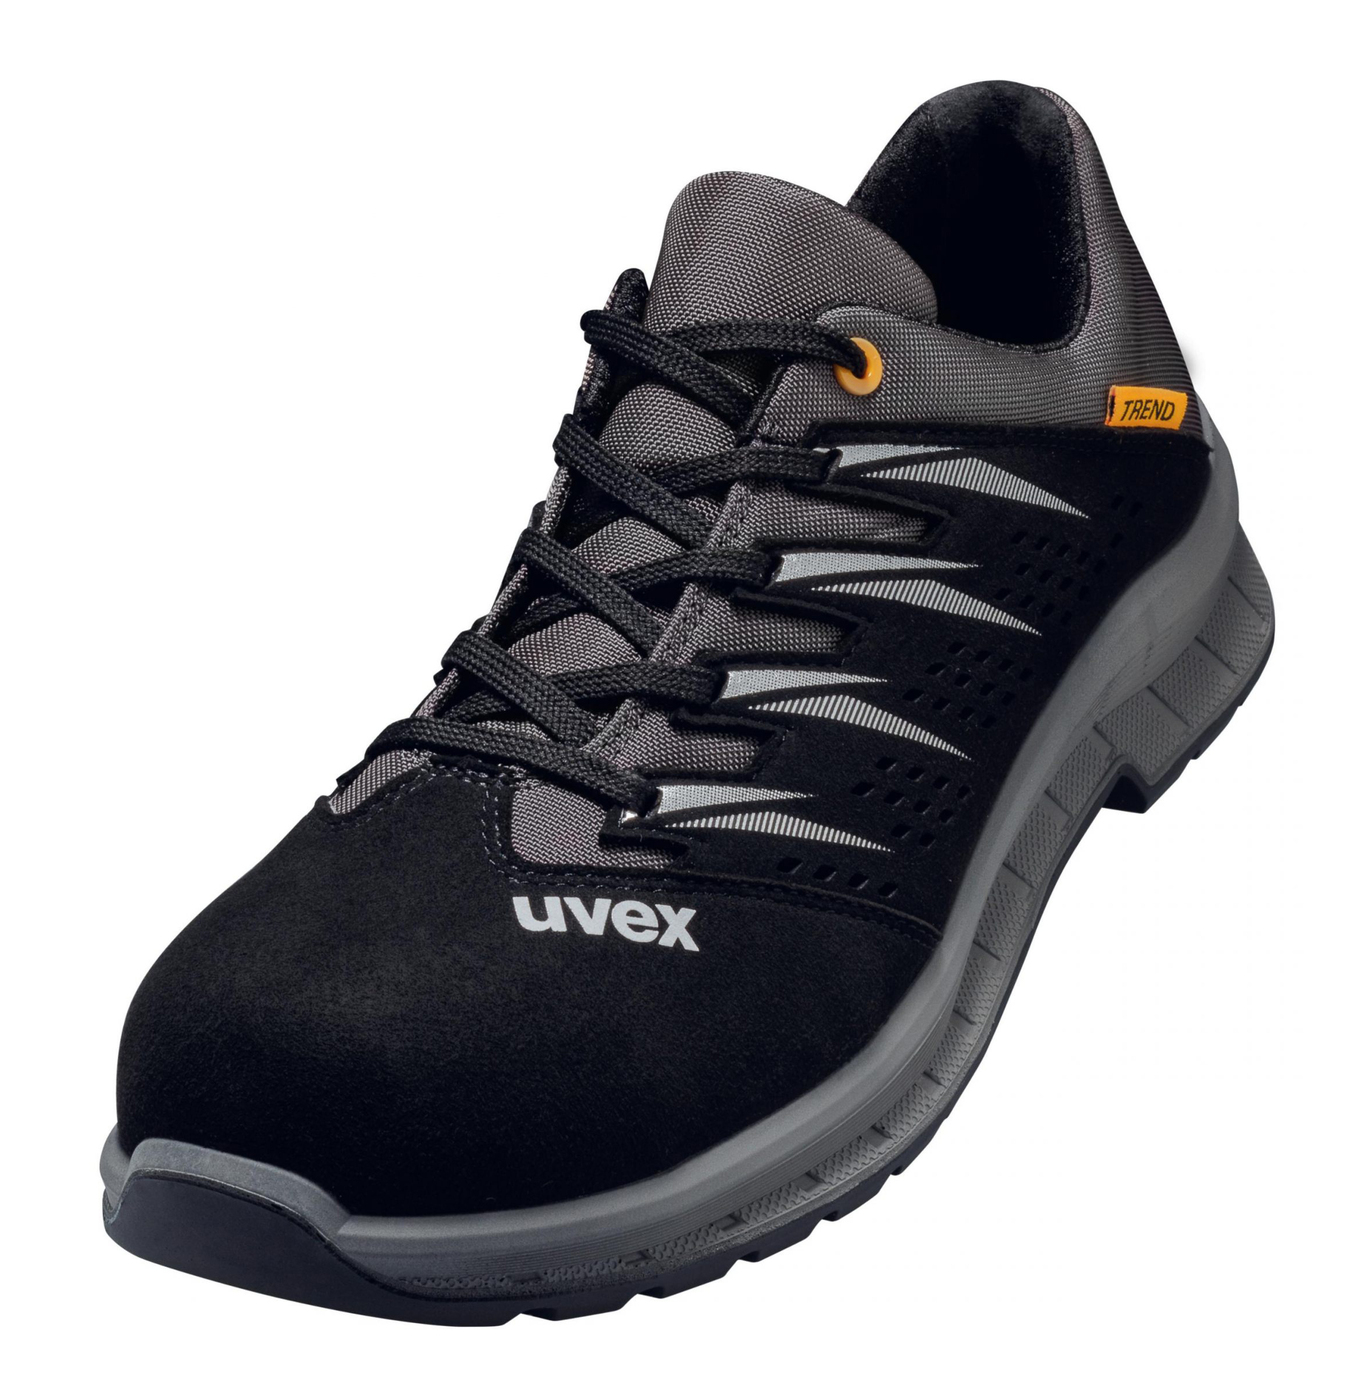 Obuv UVEX preforovaná,čierno šedá č.43 6947843 - Pracovná obuv | MasMasaryk